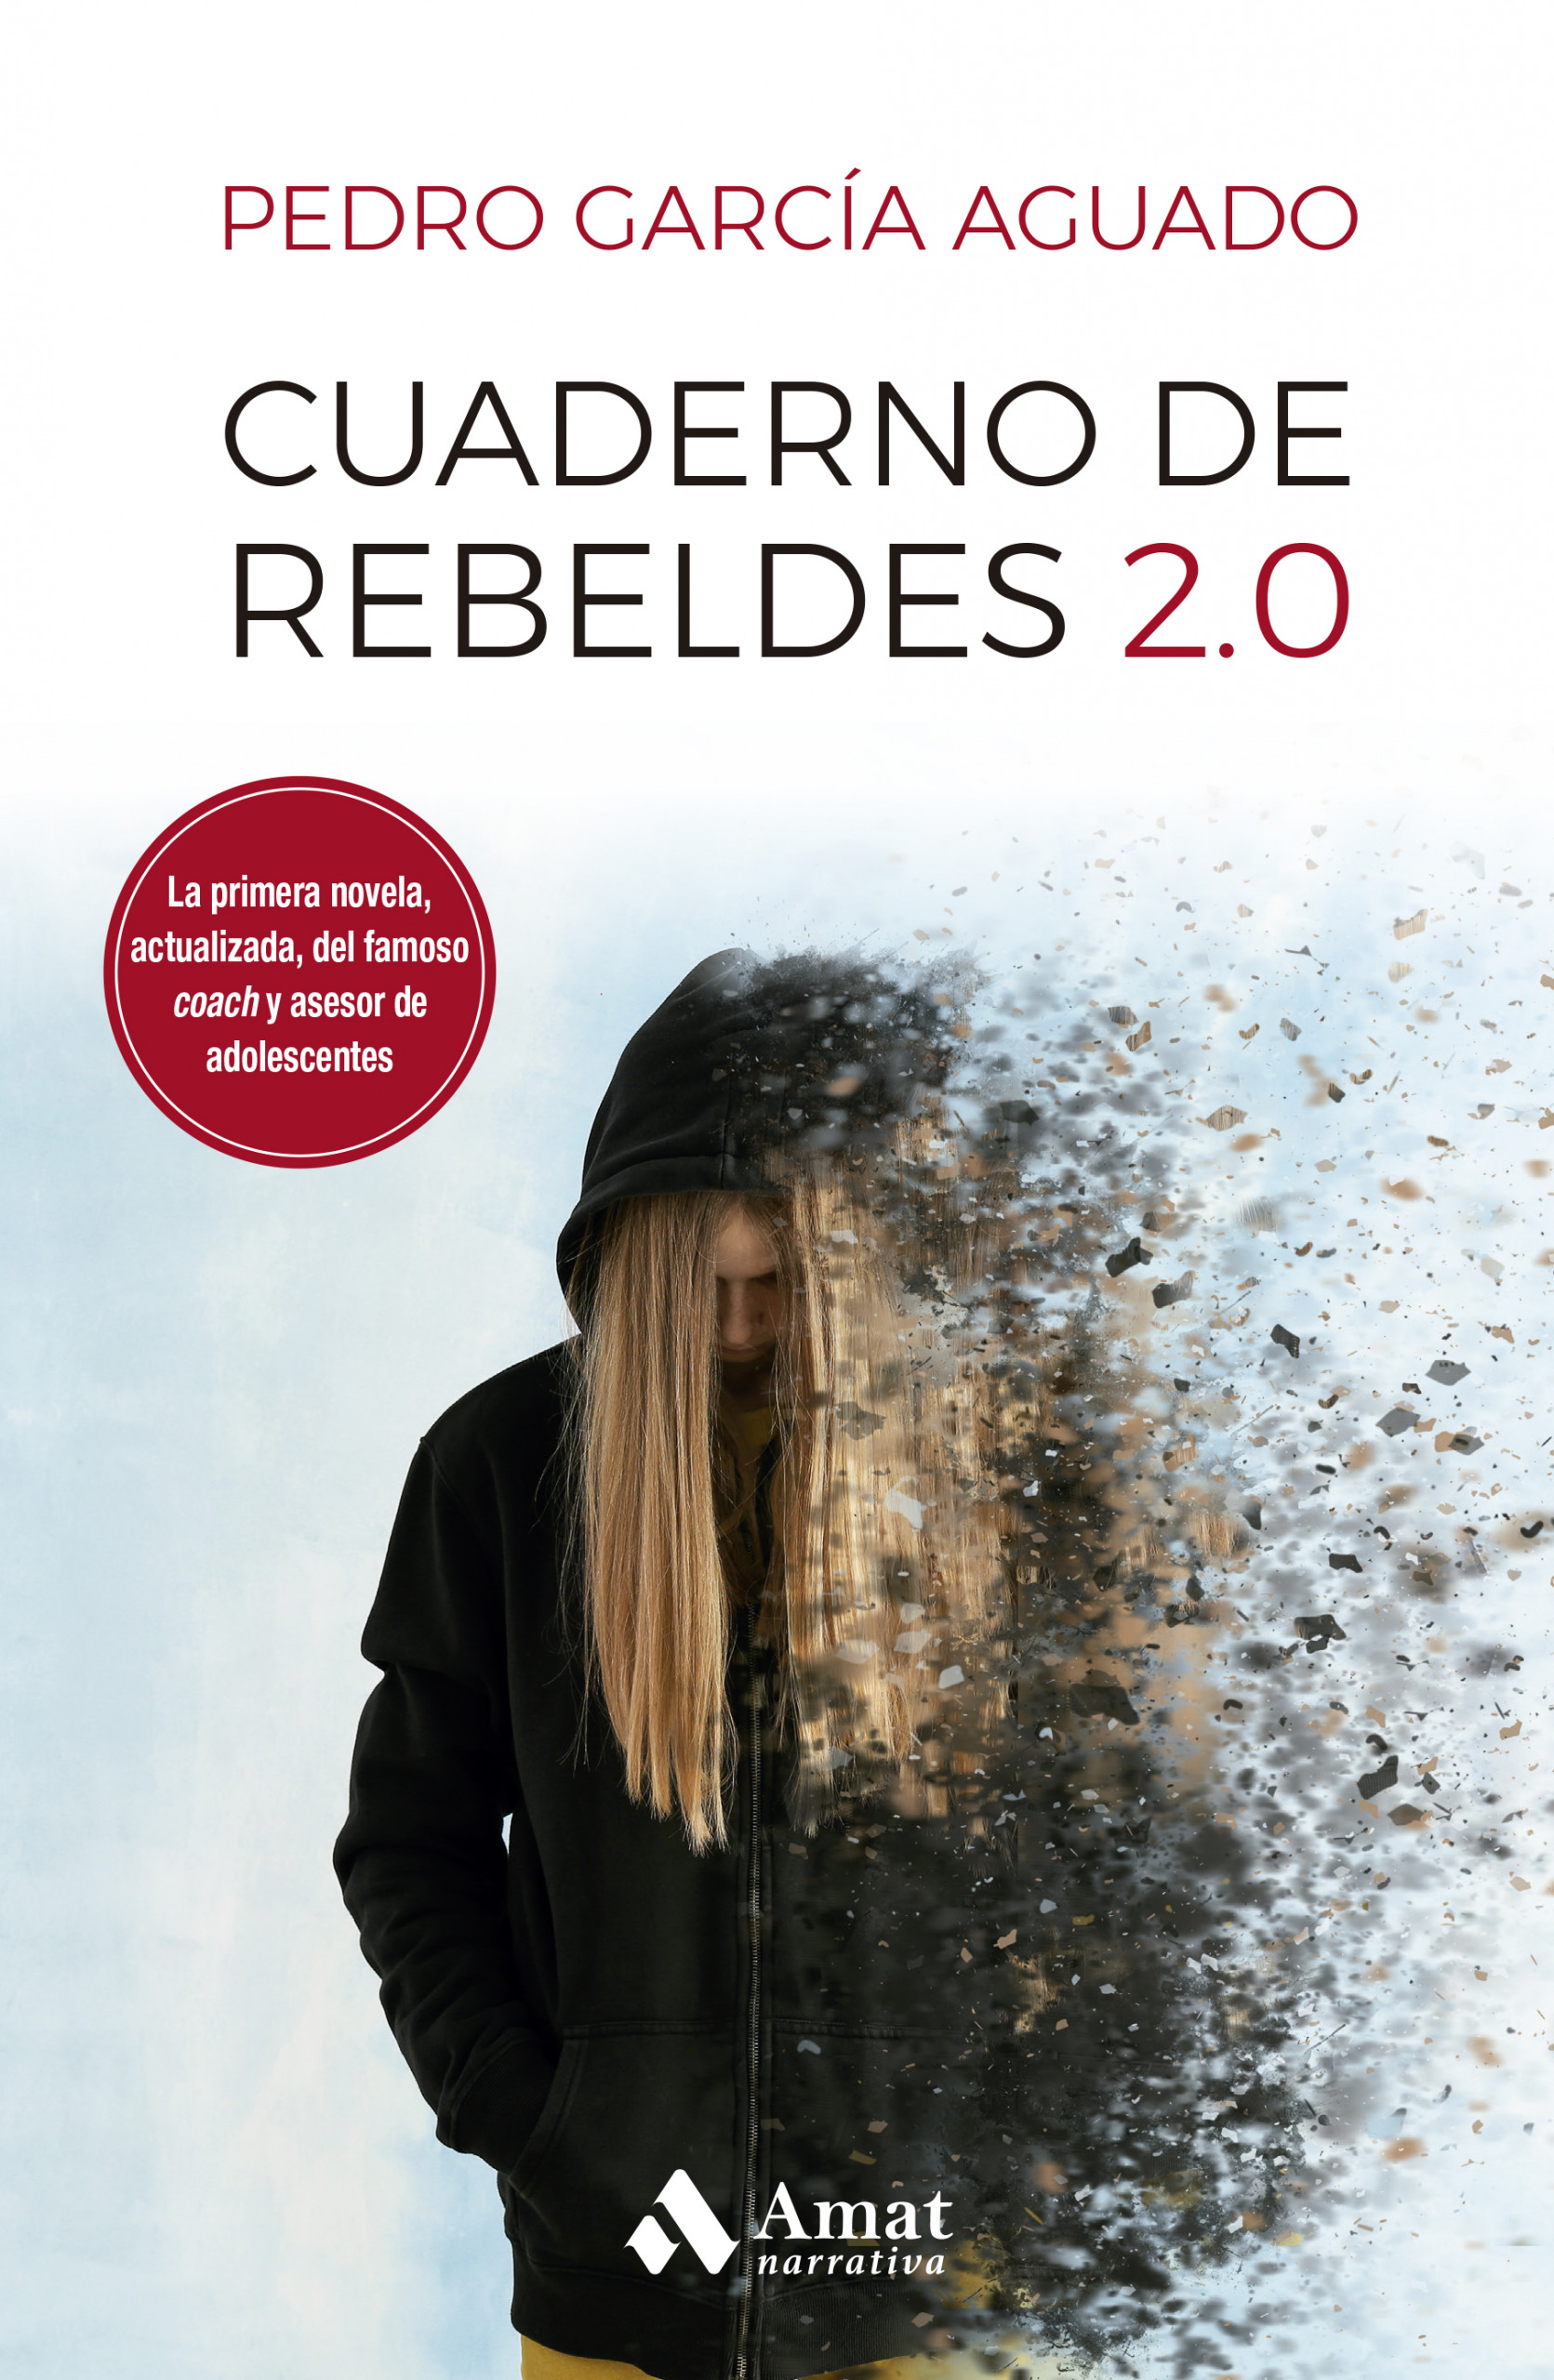 Cuaderno de rebeldes 2.0 | Pedro García Aguado | Libros para vivir mejor